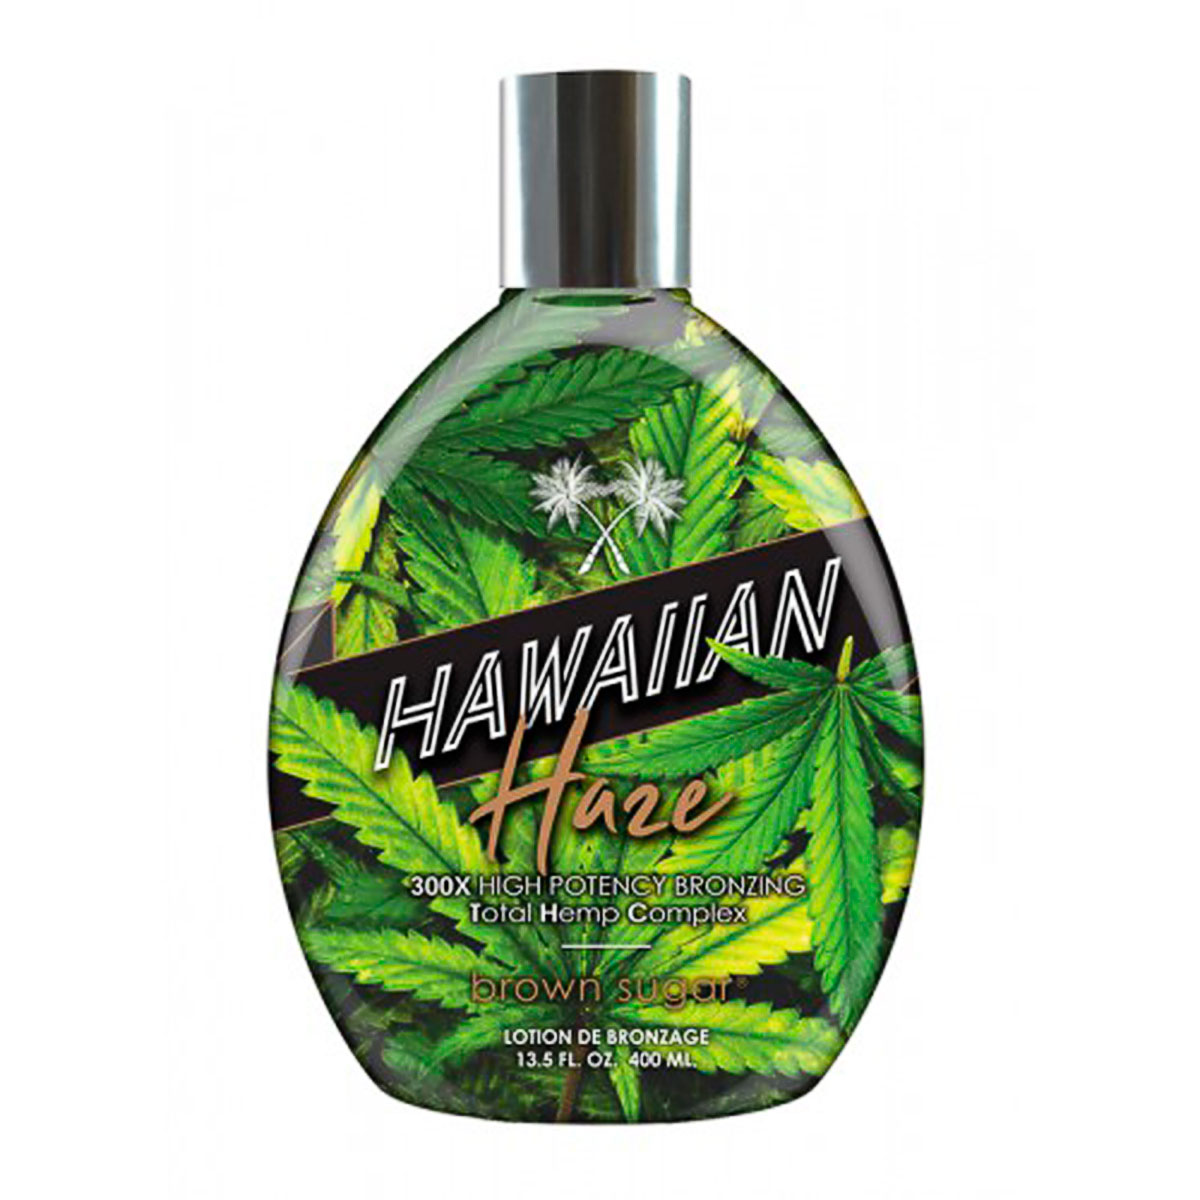 Hawaiian Haze 300x